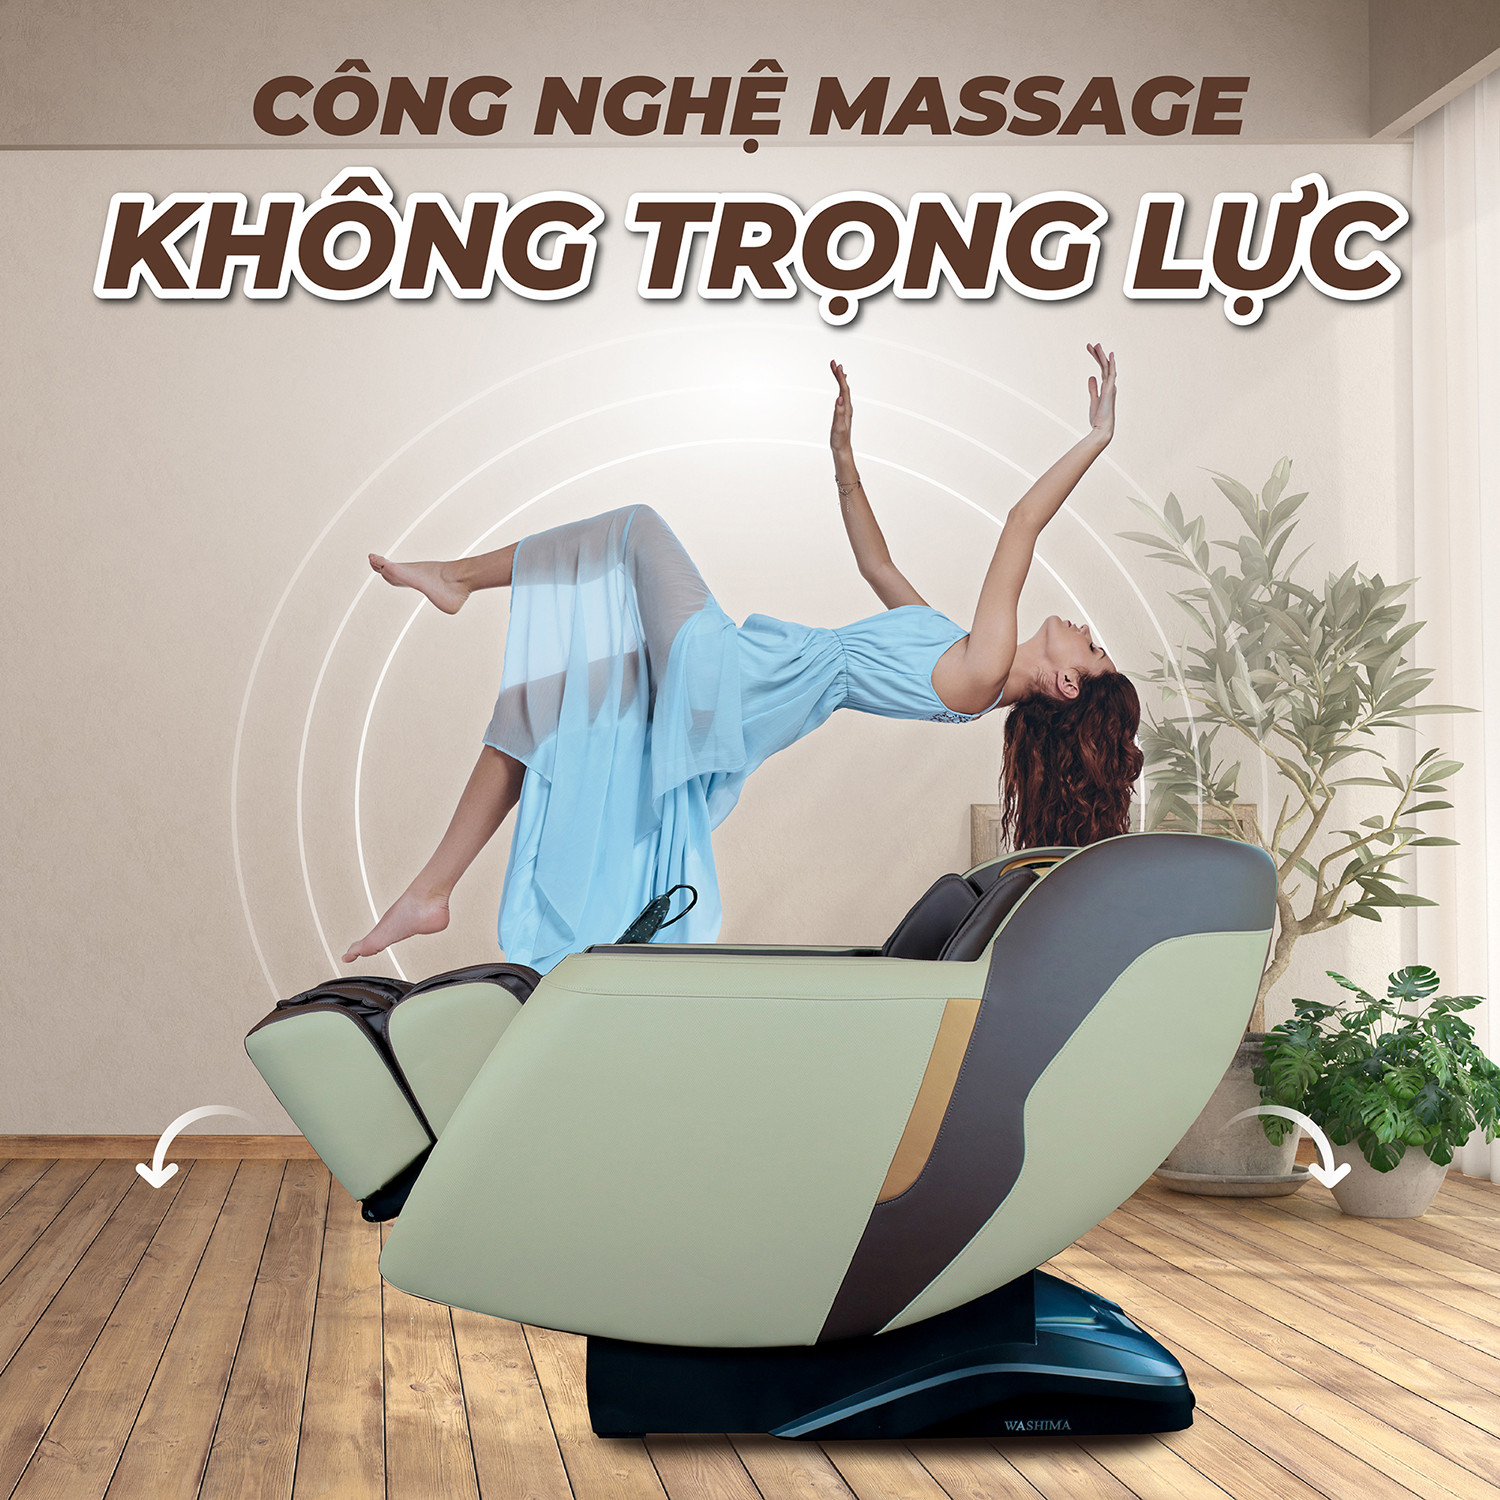 Công nghệ massage không trọng lực cải thiện cột sống giảm áp lực lên cơ thể